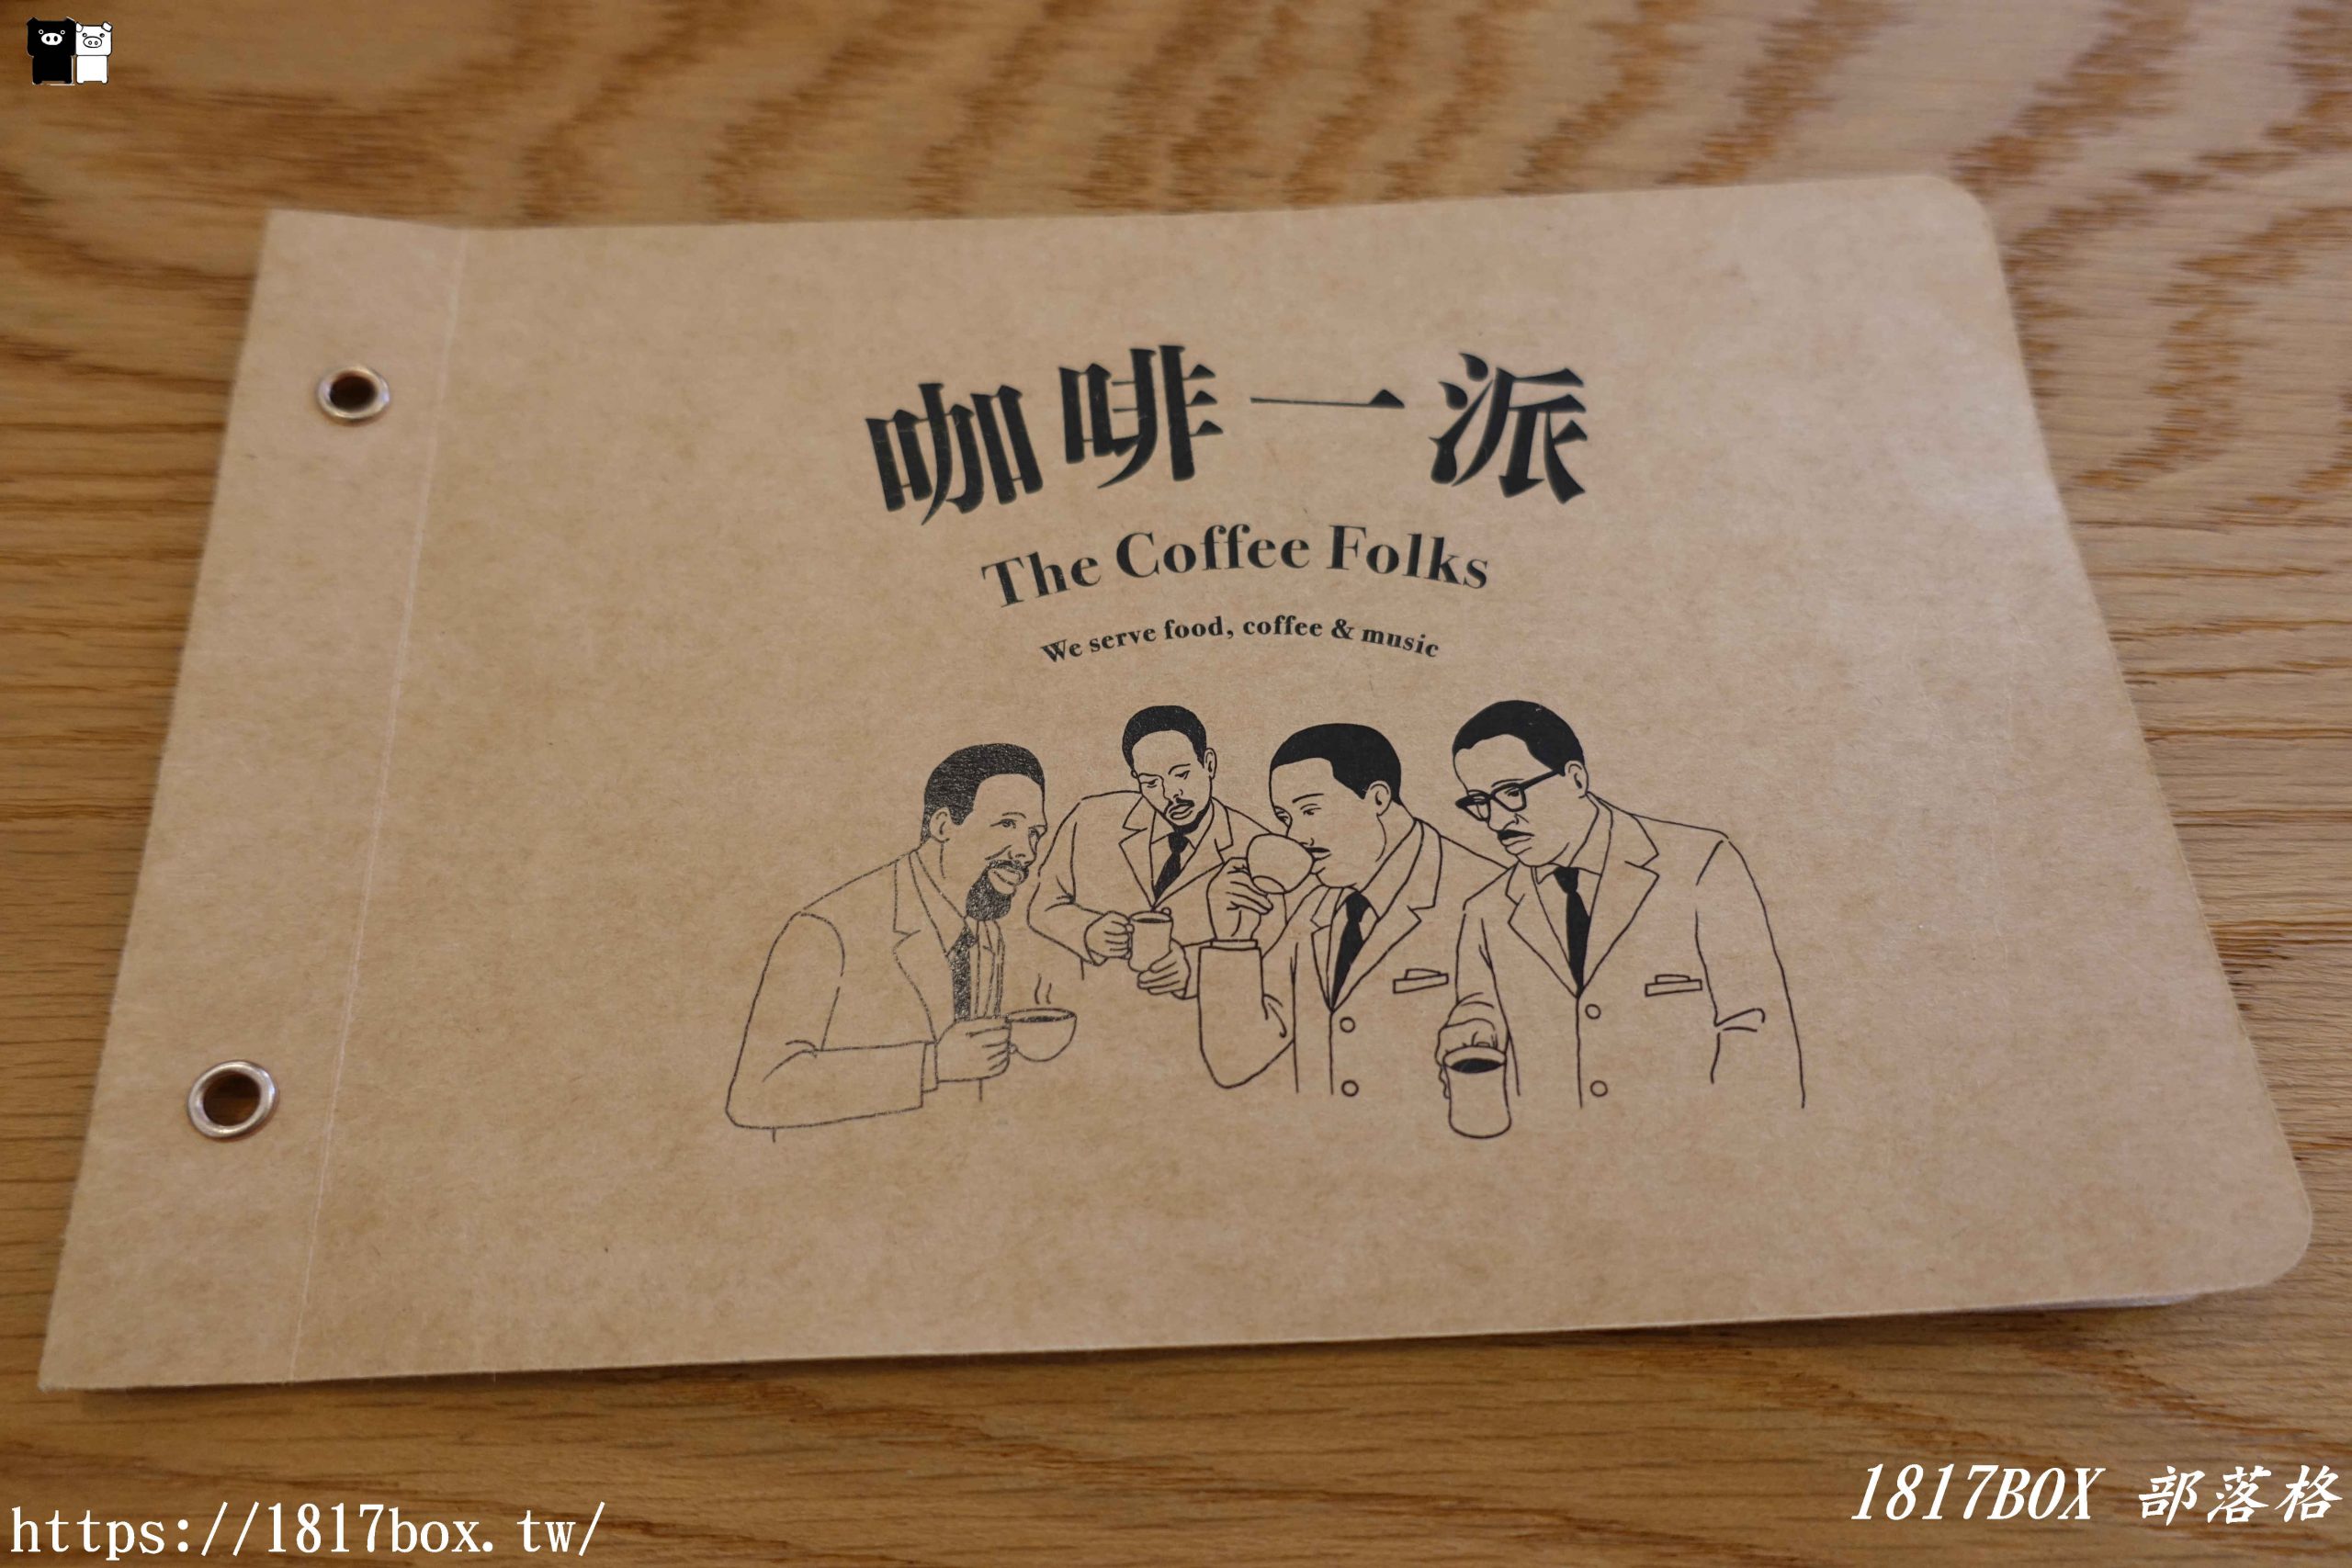 【嘉義。西區】咖啡一派 The Coffee Folks。黑膠唱片音樂。新加坡經典早餐